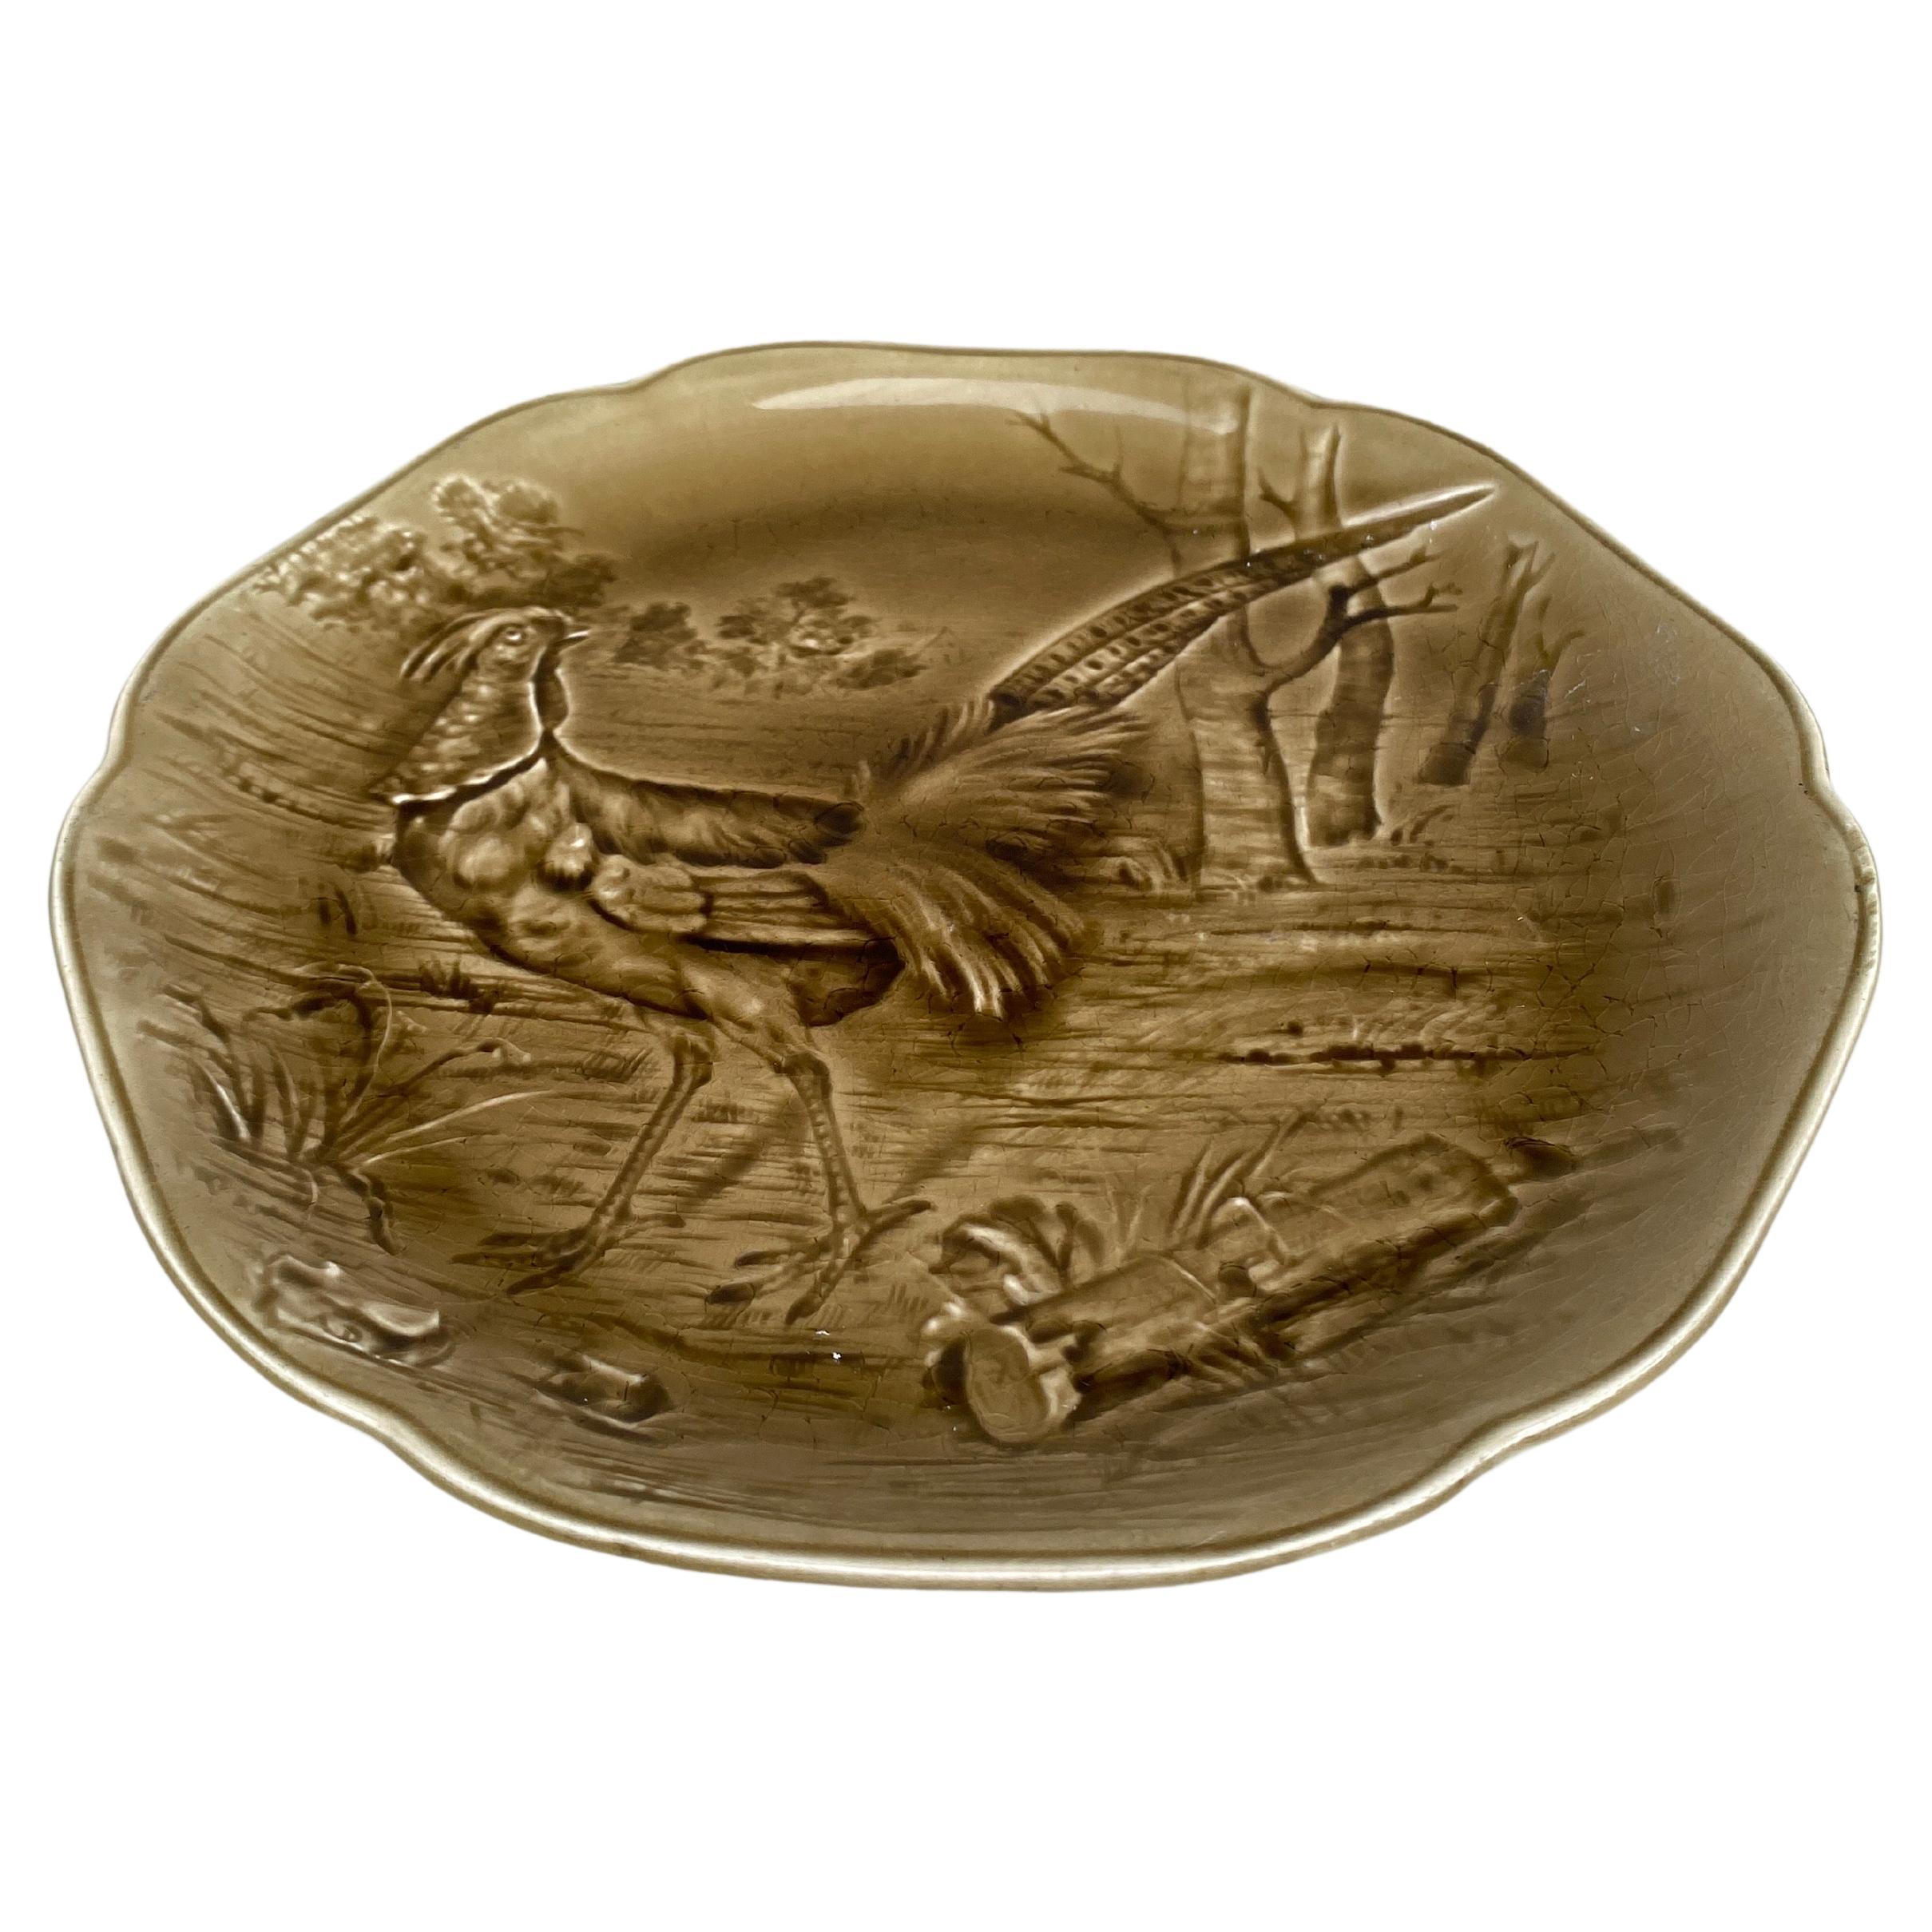 Majolikateller mit einem Fasan im Wald, signiert Hippolyte Boulenger Choisy-le-Roi, um 1890.
Die Manufaktur von Choisy-le-Roi war eine der wichtigsten Manufakturen am Ende des 19. Jahrhunderts, die sehr hochwertige Keramik aller Art wie Majolika